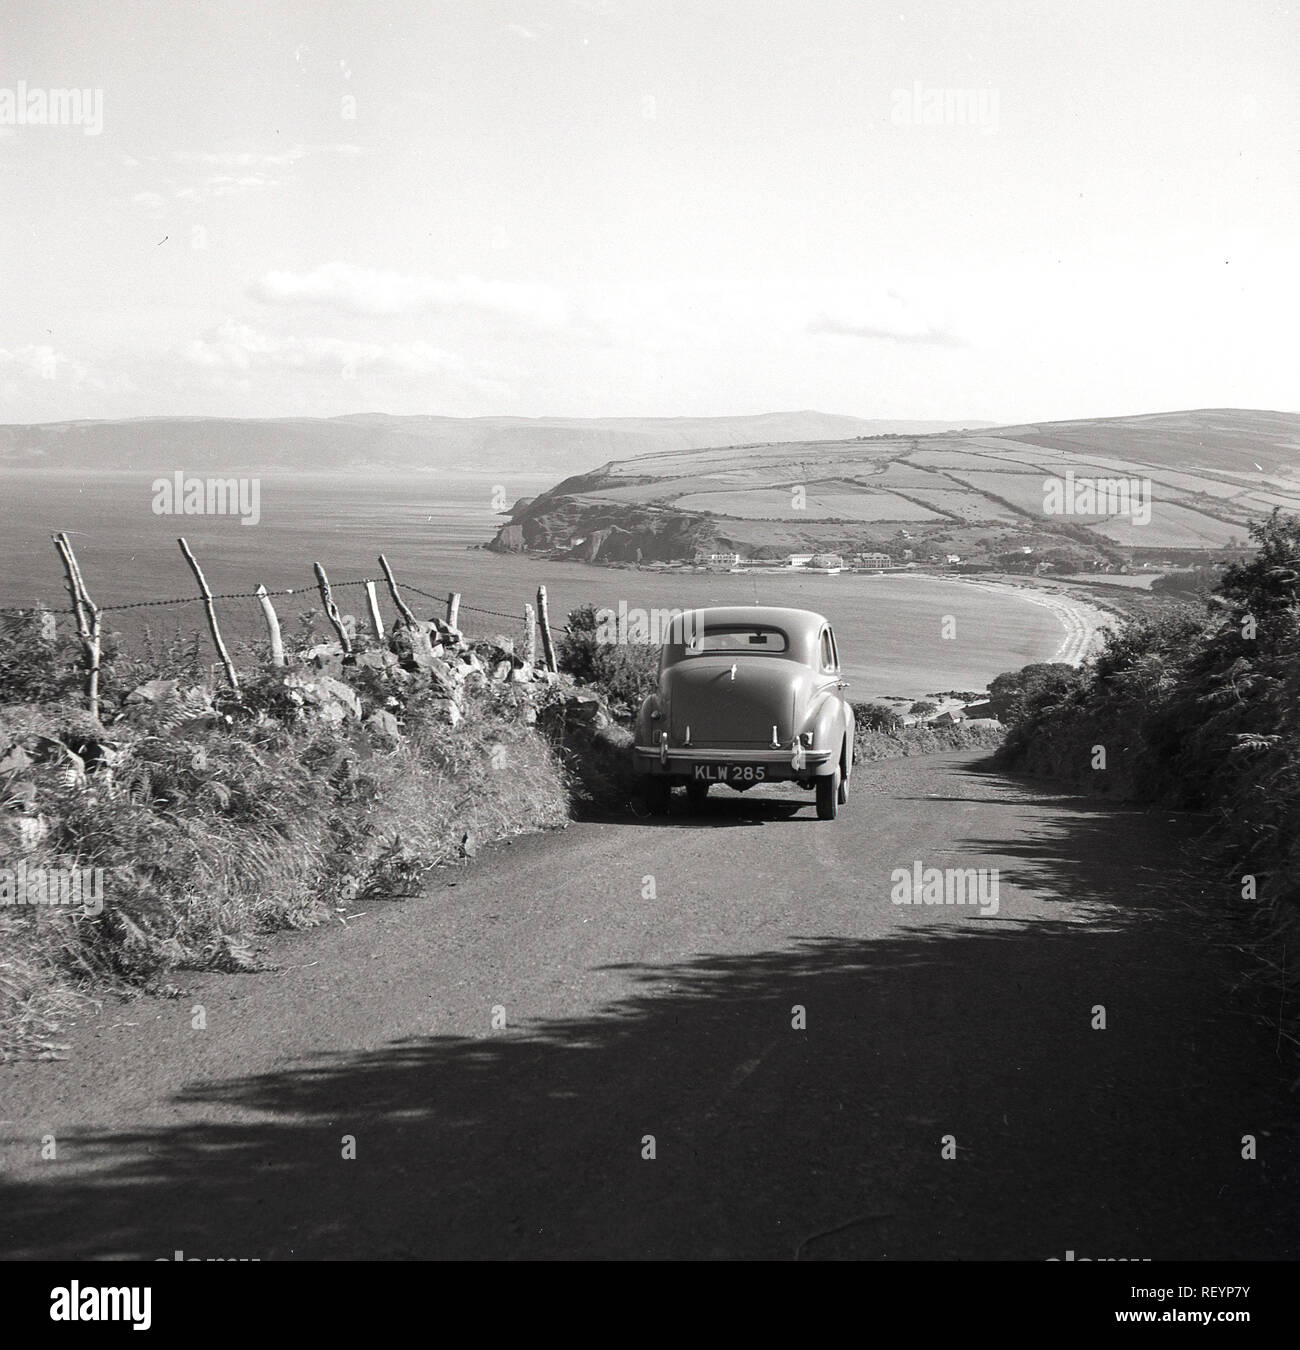 Années 1950, historiques, une voiture Austin de l'époque mis en garde sur la colline sur un chemin de campagne en Co. Antrim donnant sur l'océan Atlantique en Irlande du Nord. Antrim est célèbre pour son magnifique route côtière, la route côtière de la chaussée Banque D'Images